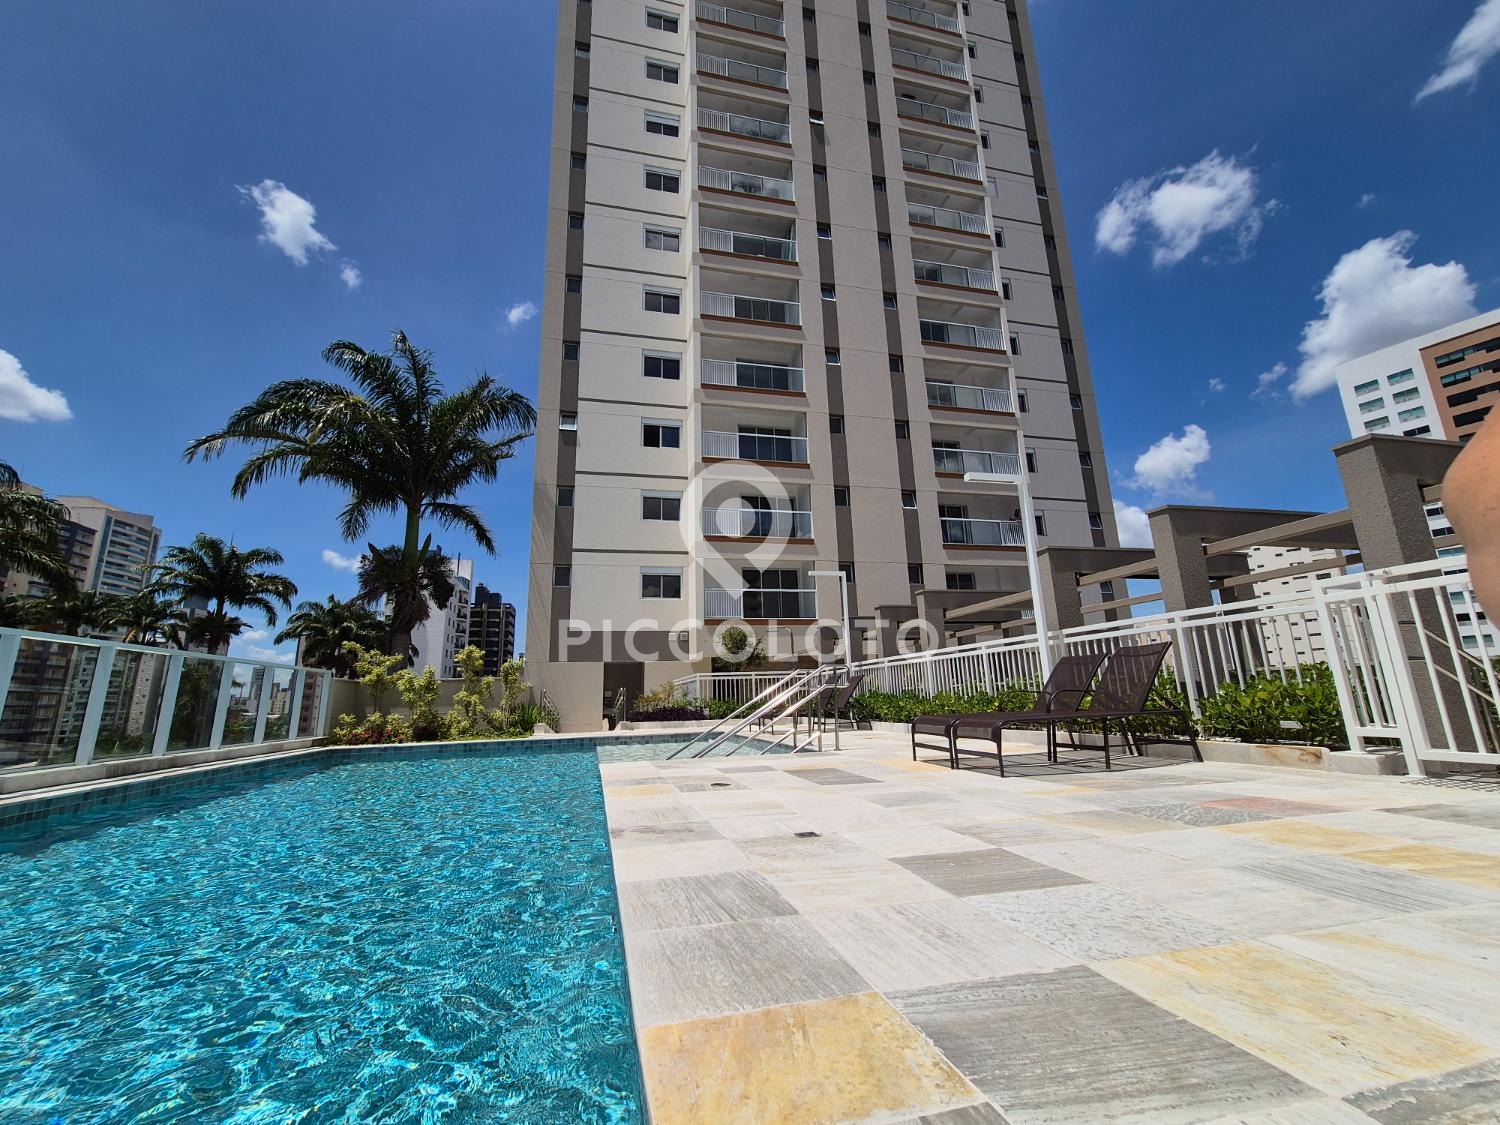 Piccoloto - Apartamento para alugar no Jardim Guanabara em Campinas